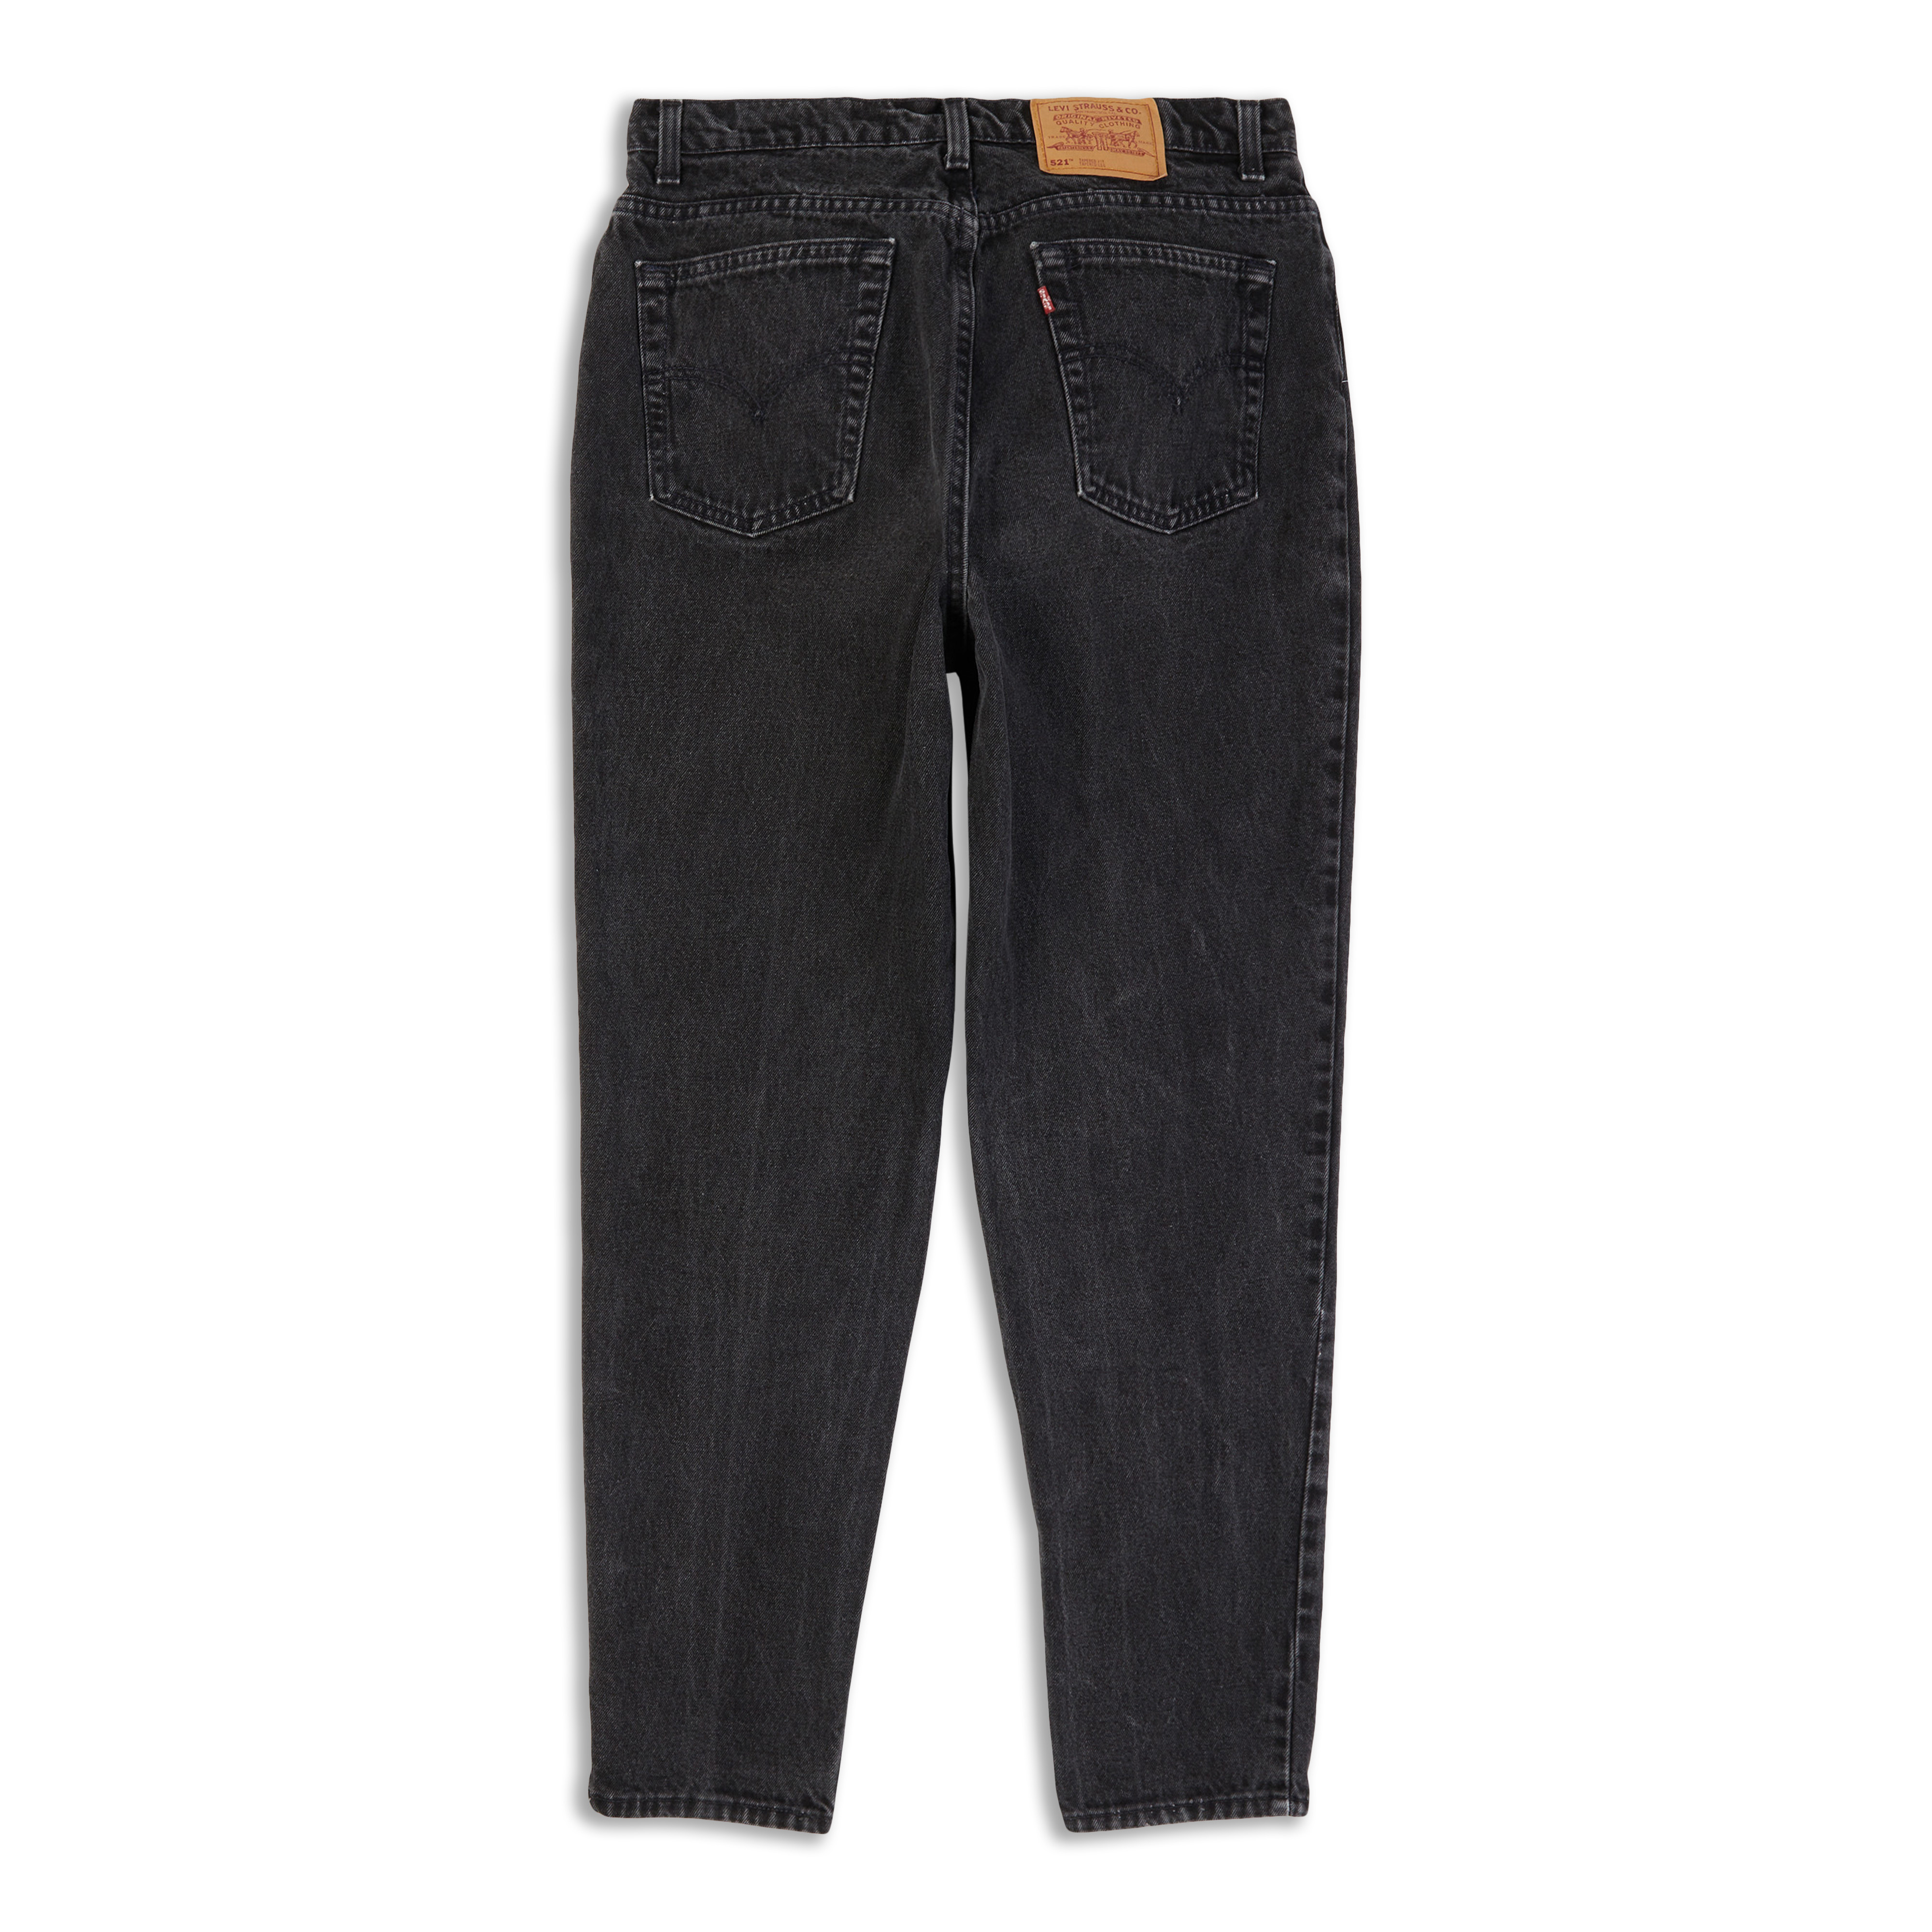 den første afsked Australsk person Levis Vintage 521™ Jeans Black